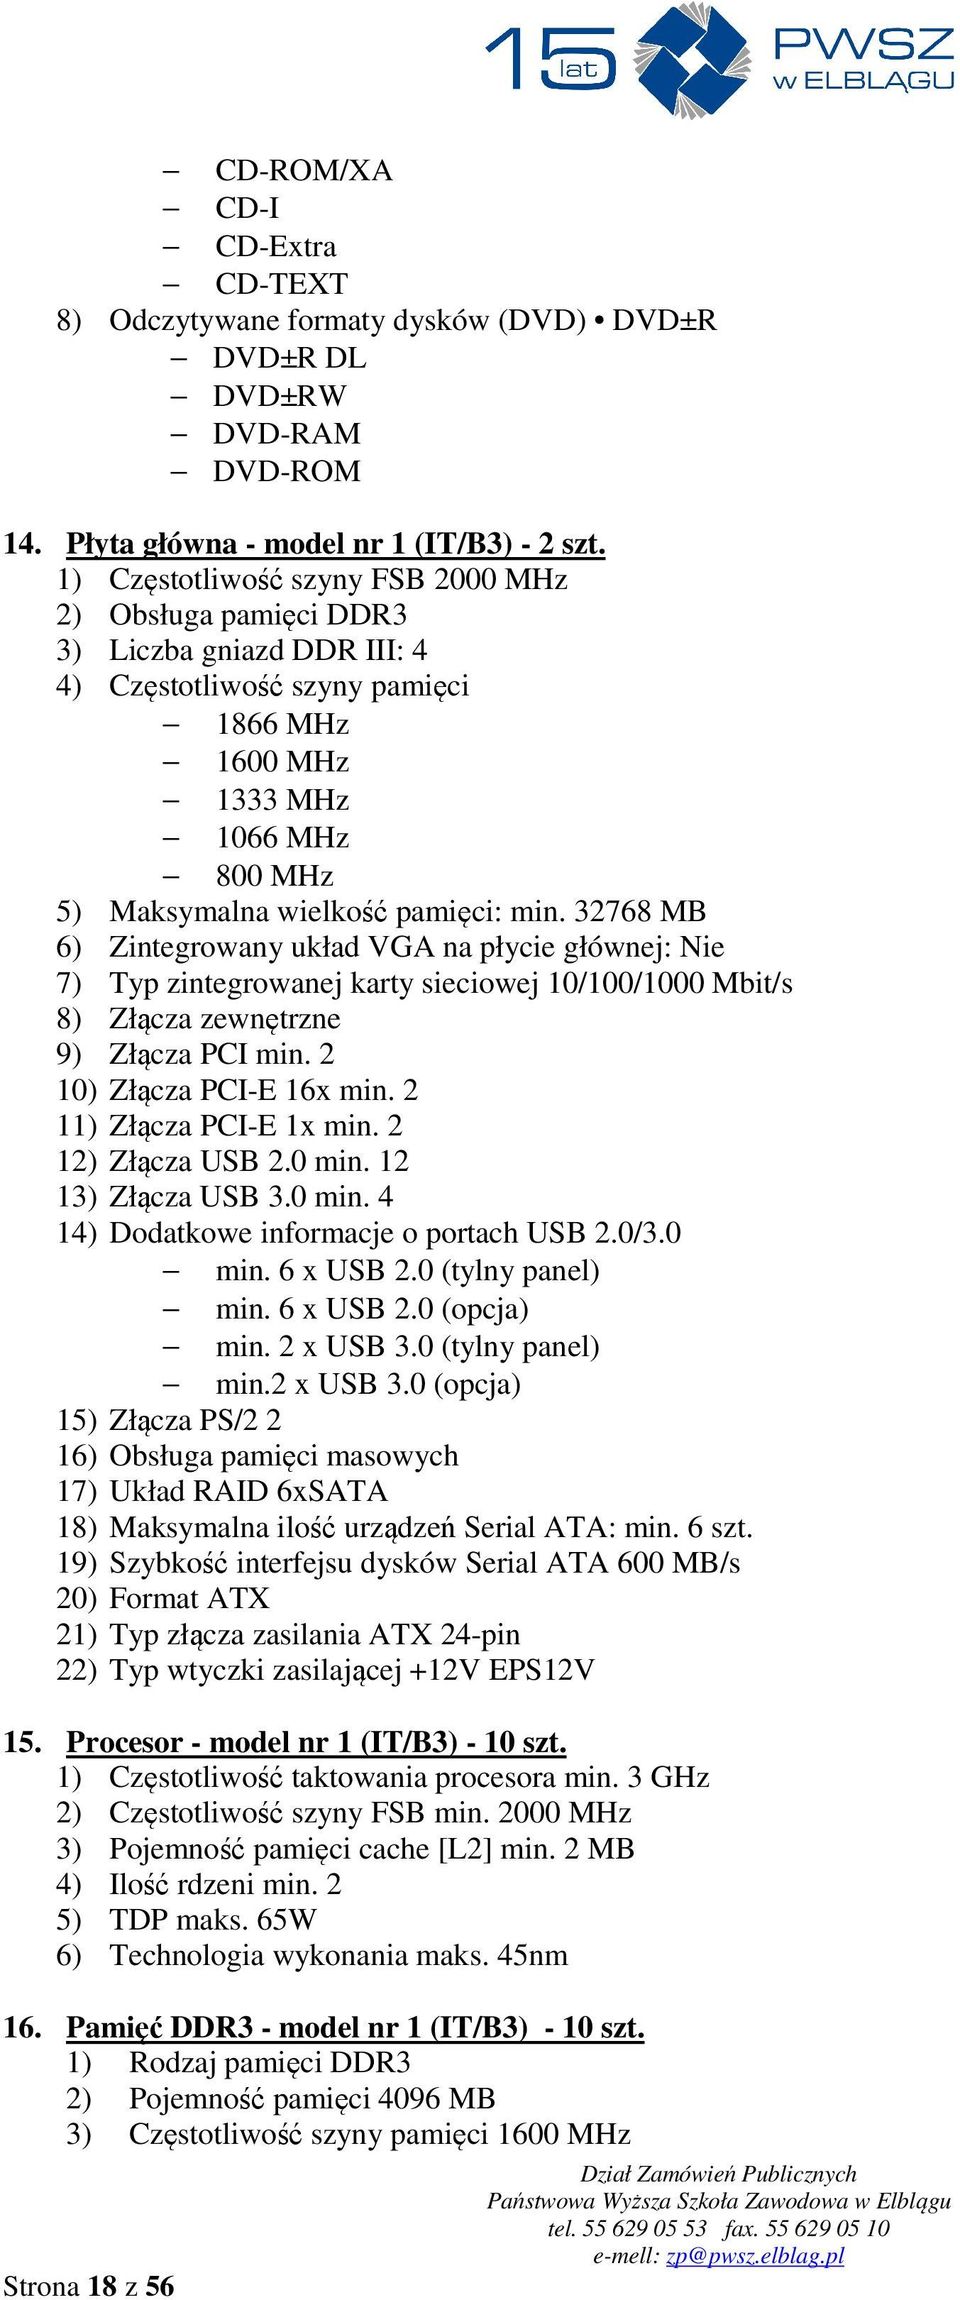 32768 MB 6) Zintegrowany układ VGA na płycie głównej: Nie 7) Typ zintegrowanej karty sieciowej 10/100/1000 Mbit/s 8) Złącza zewnętrzne 9) Złącza PCI min. 2 10) Złącza PCI-E 16x min.